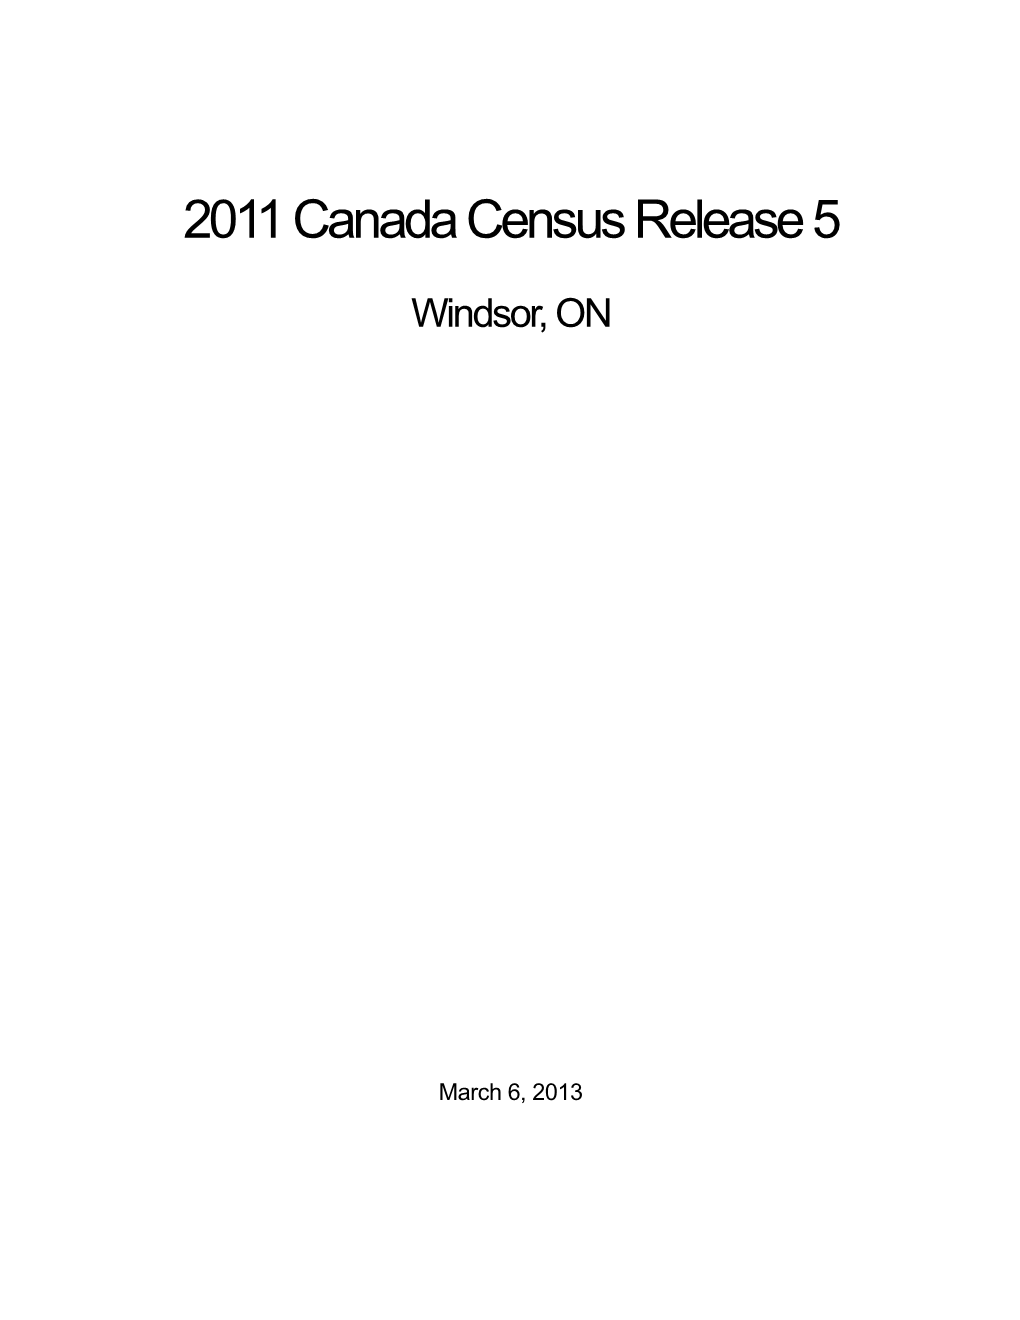 2011 Canada Census Release 5 Report